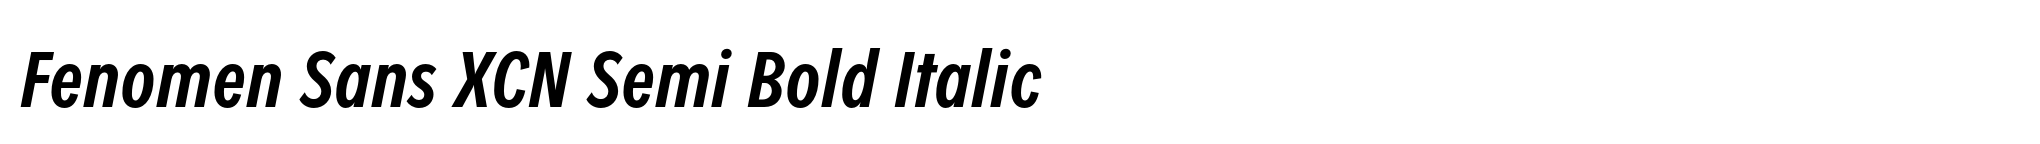 Fenomen Sans XCN Semi Bold Italic image